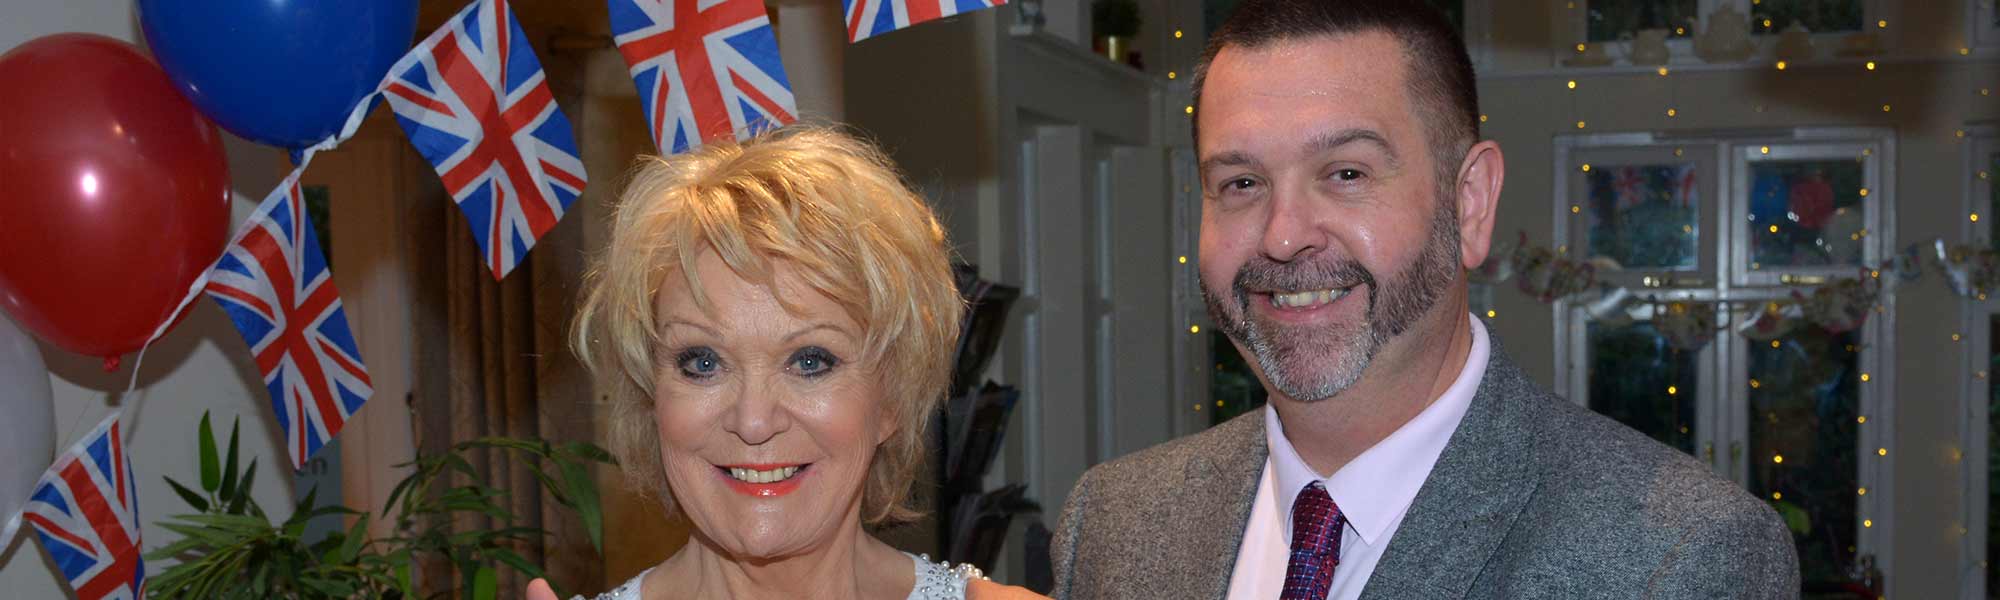 Merlin Court Care Home Marlborough Sherrie Hewson celebrity visit best of British union flag balloon banner hero